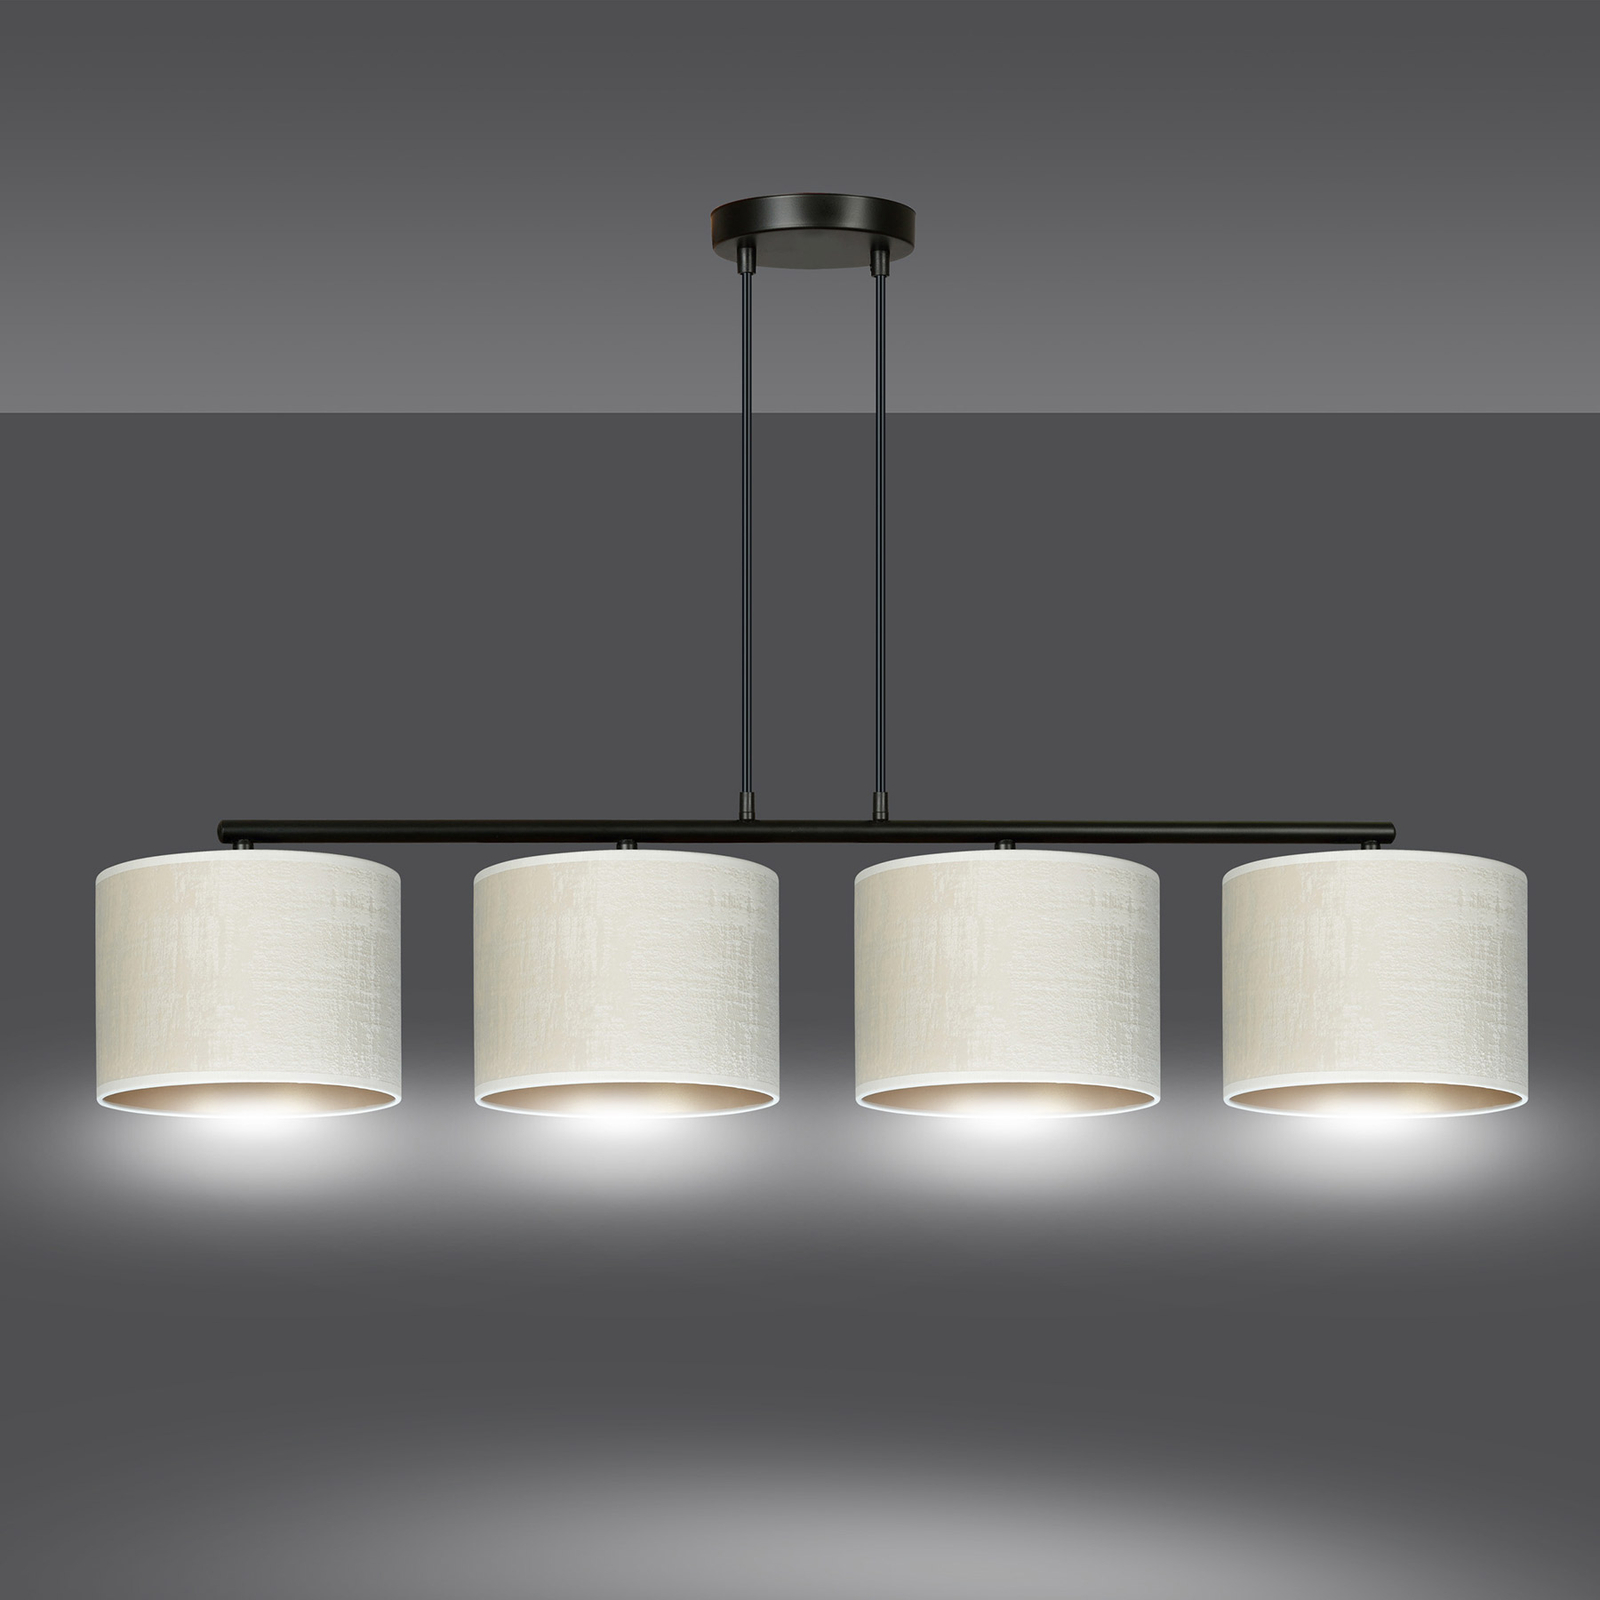 Hanglamp Jari stoffen kap 4-lamps lang, wit-goud